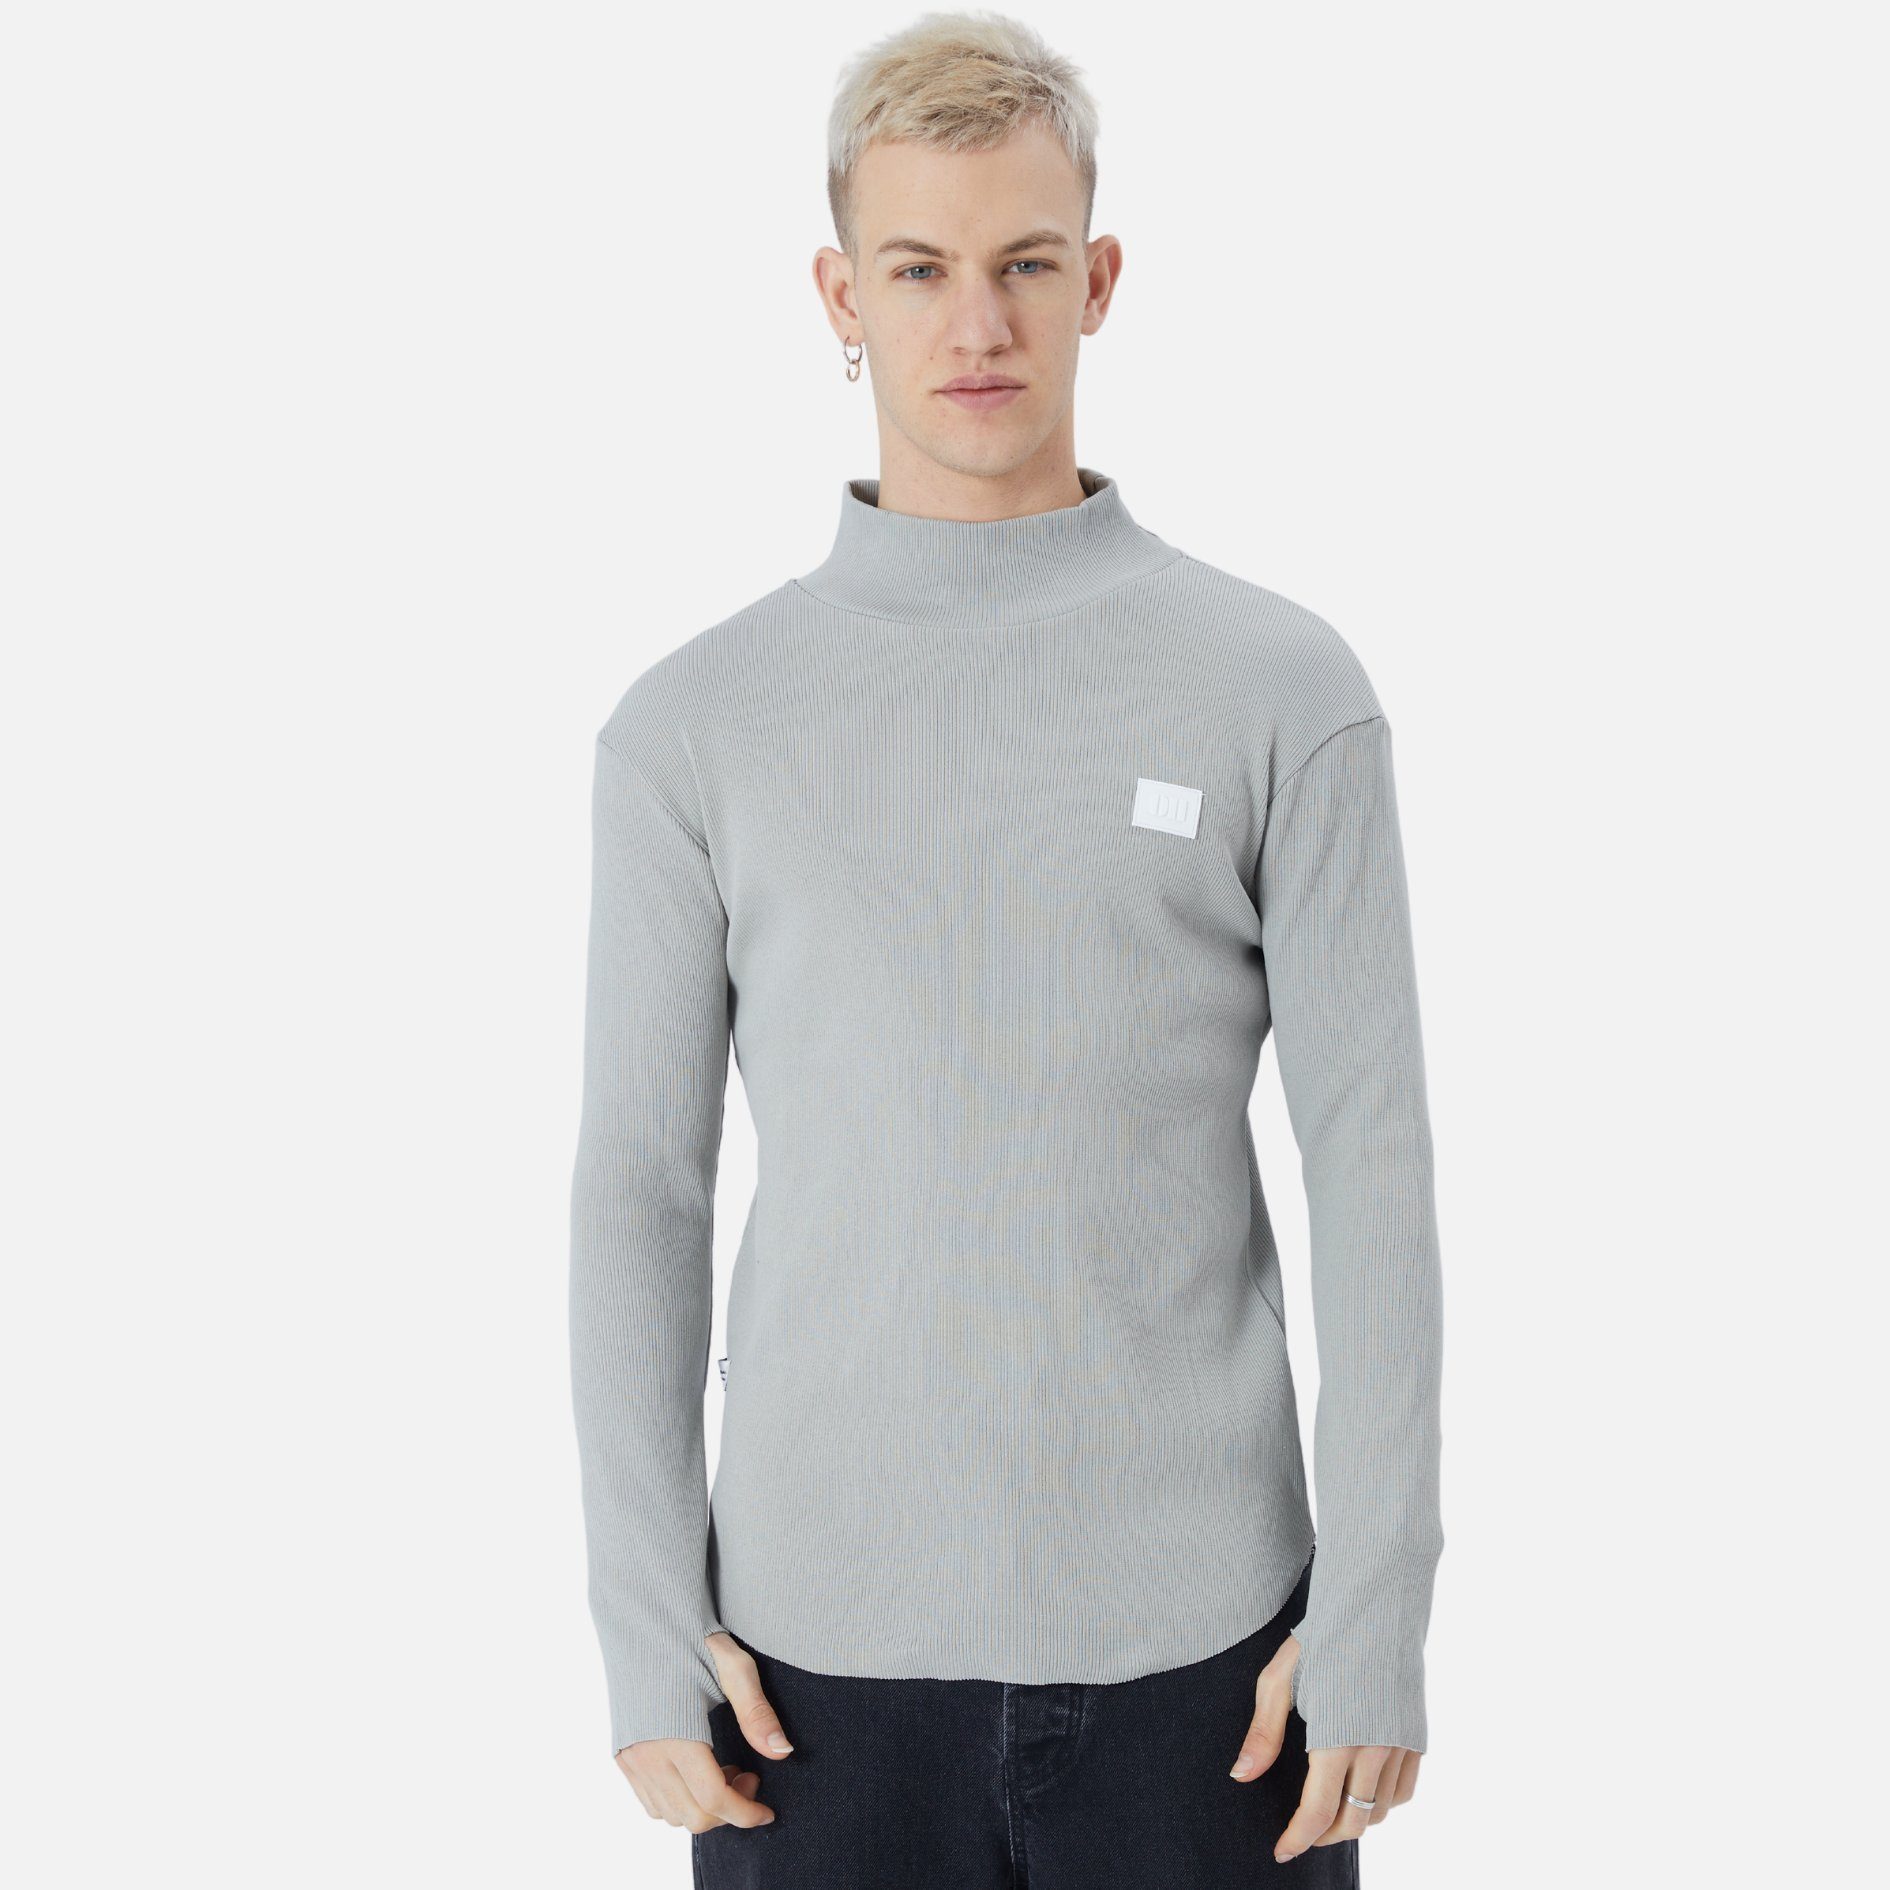 Casuals Pullover Rundhals Sweatshirt Sweatshirt Herren COFI Regular Grau Fit